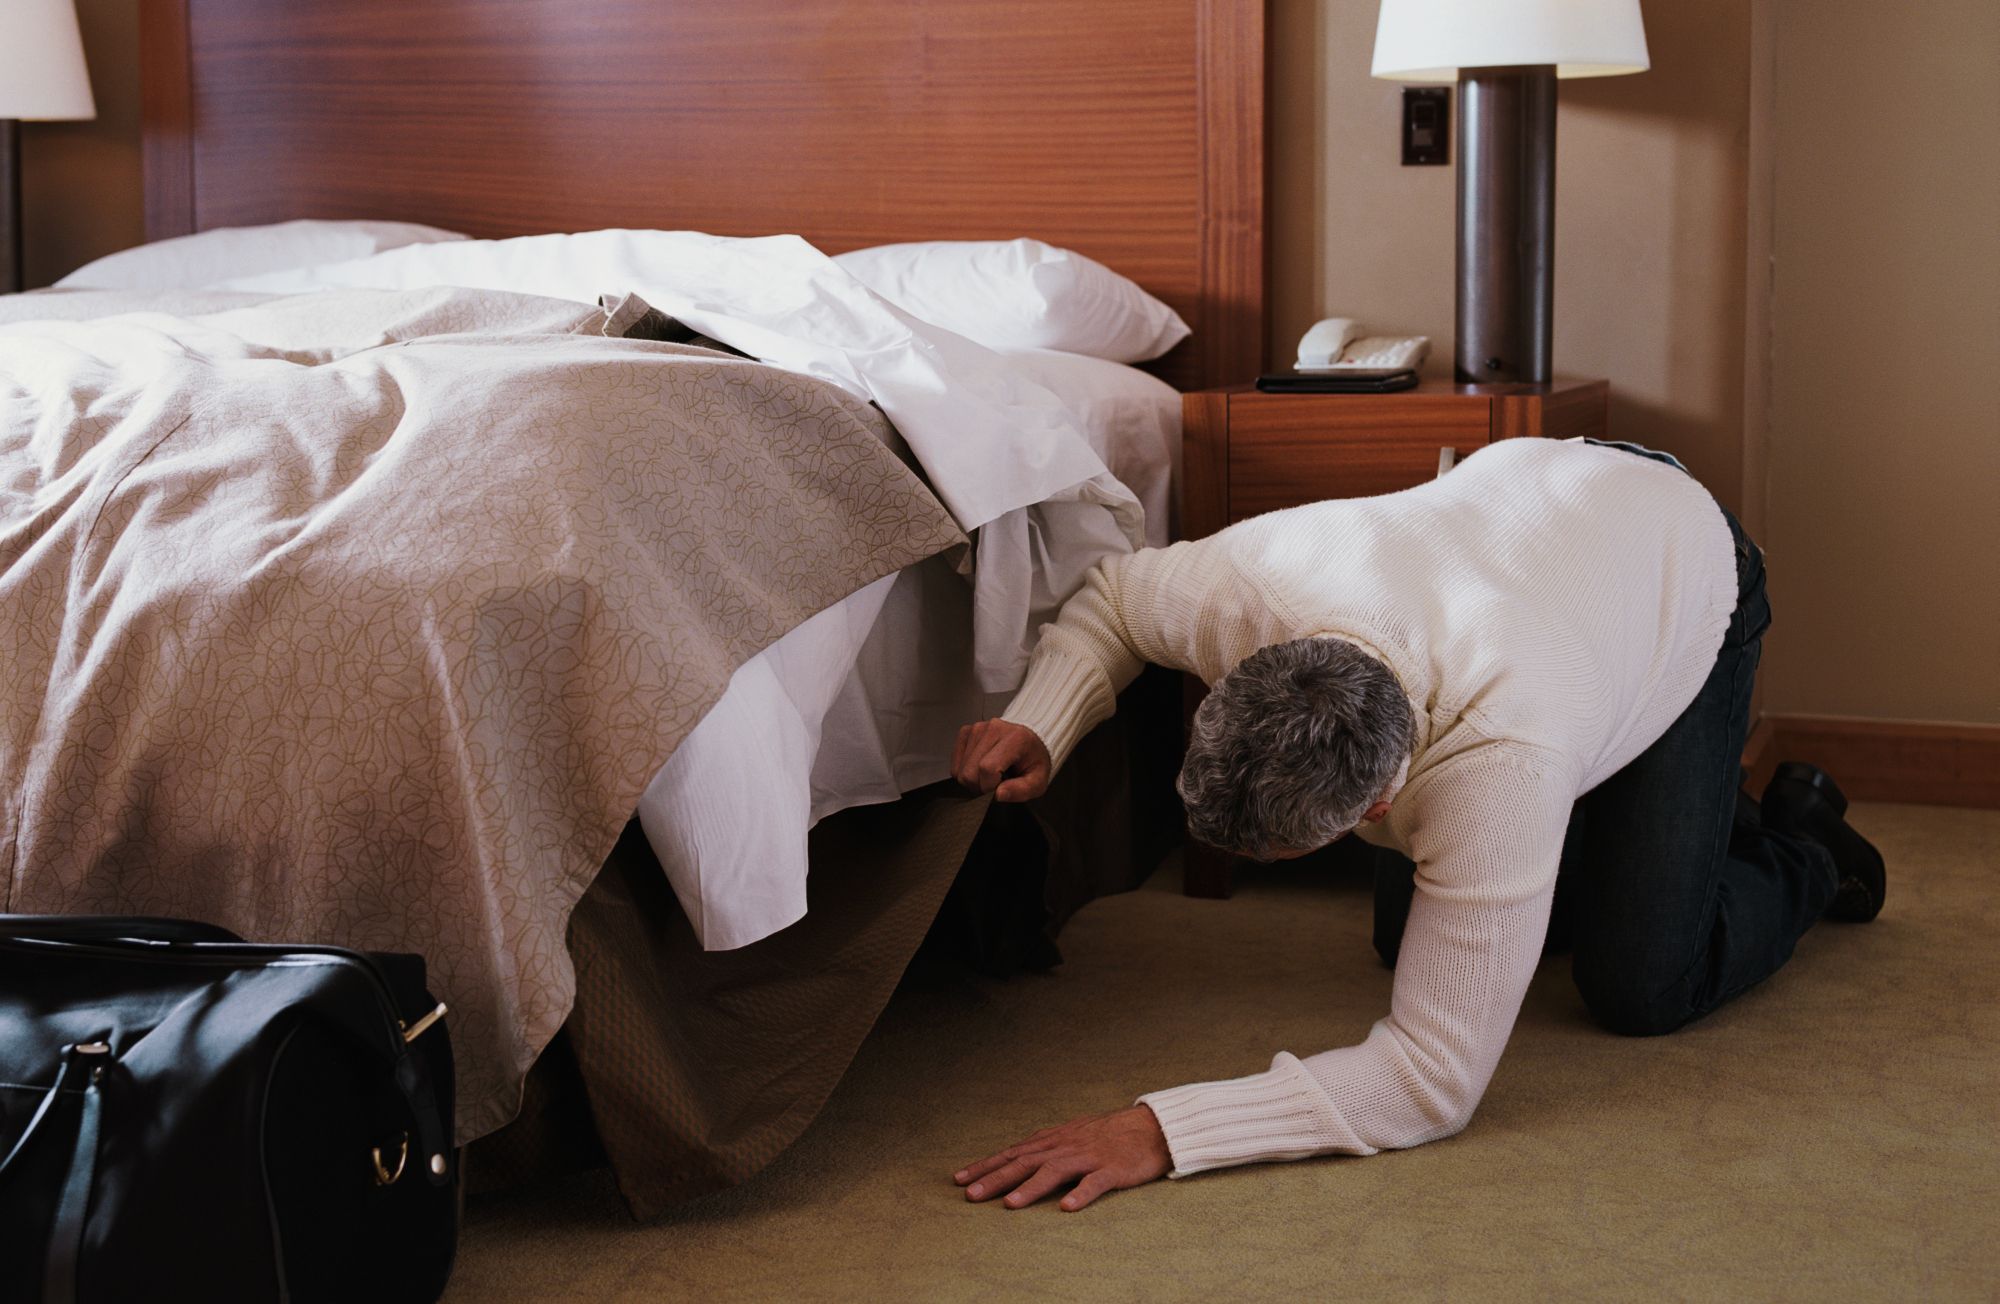 Hid under the bed. Человек заглядывает под кровать. Ищет под кроватью. Случай в отеле.